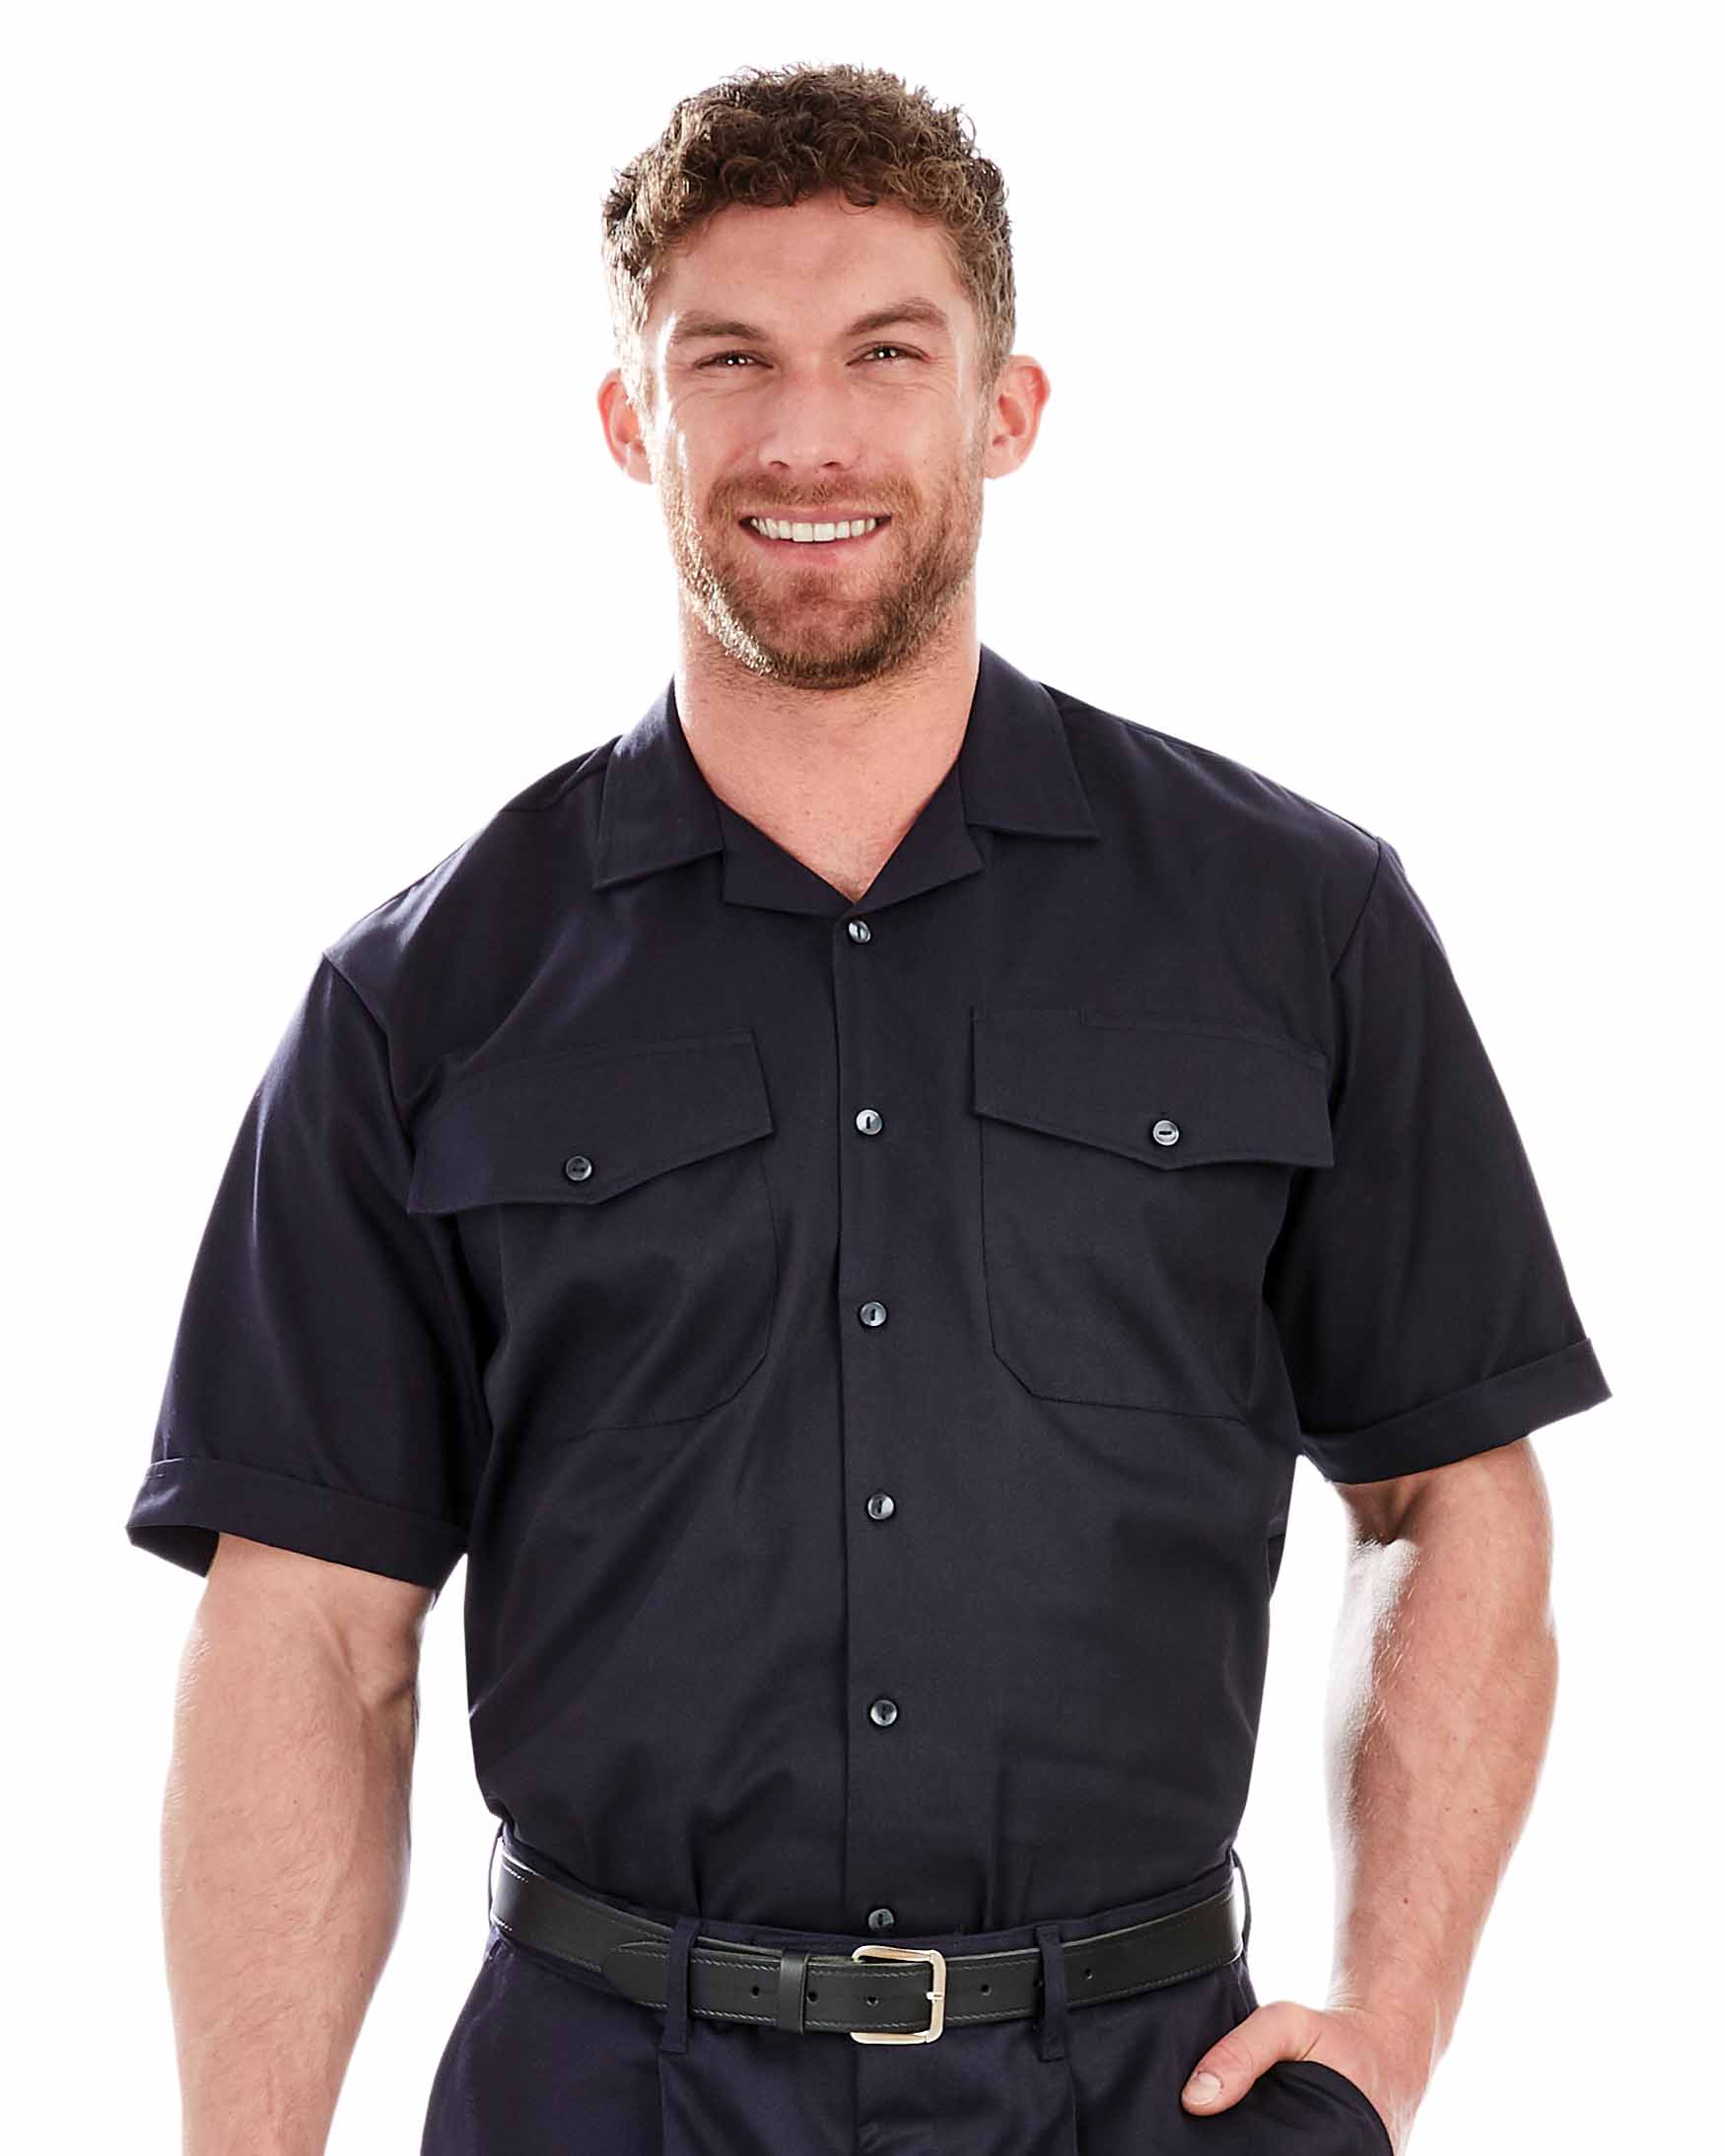 Men’s Short Sleeve Fire Brigade Shirt